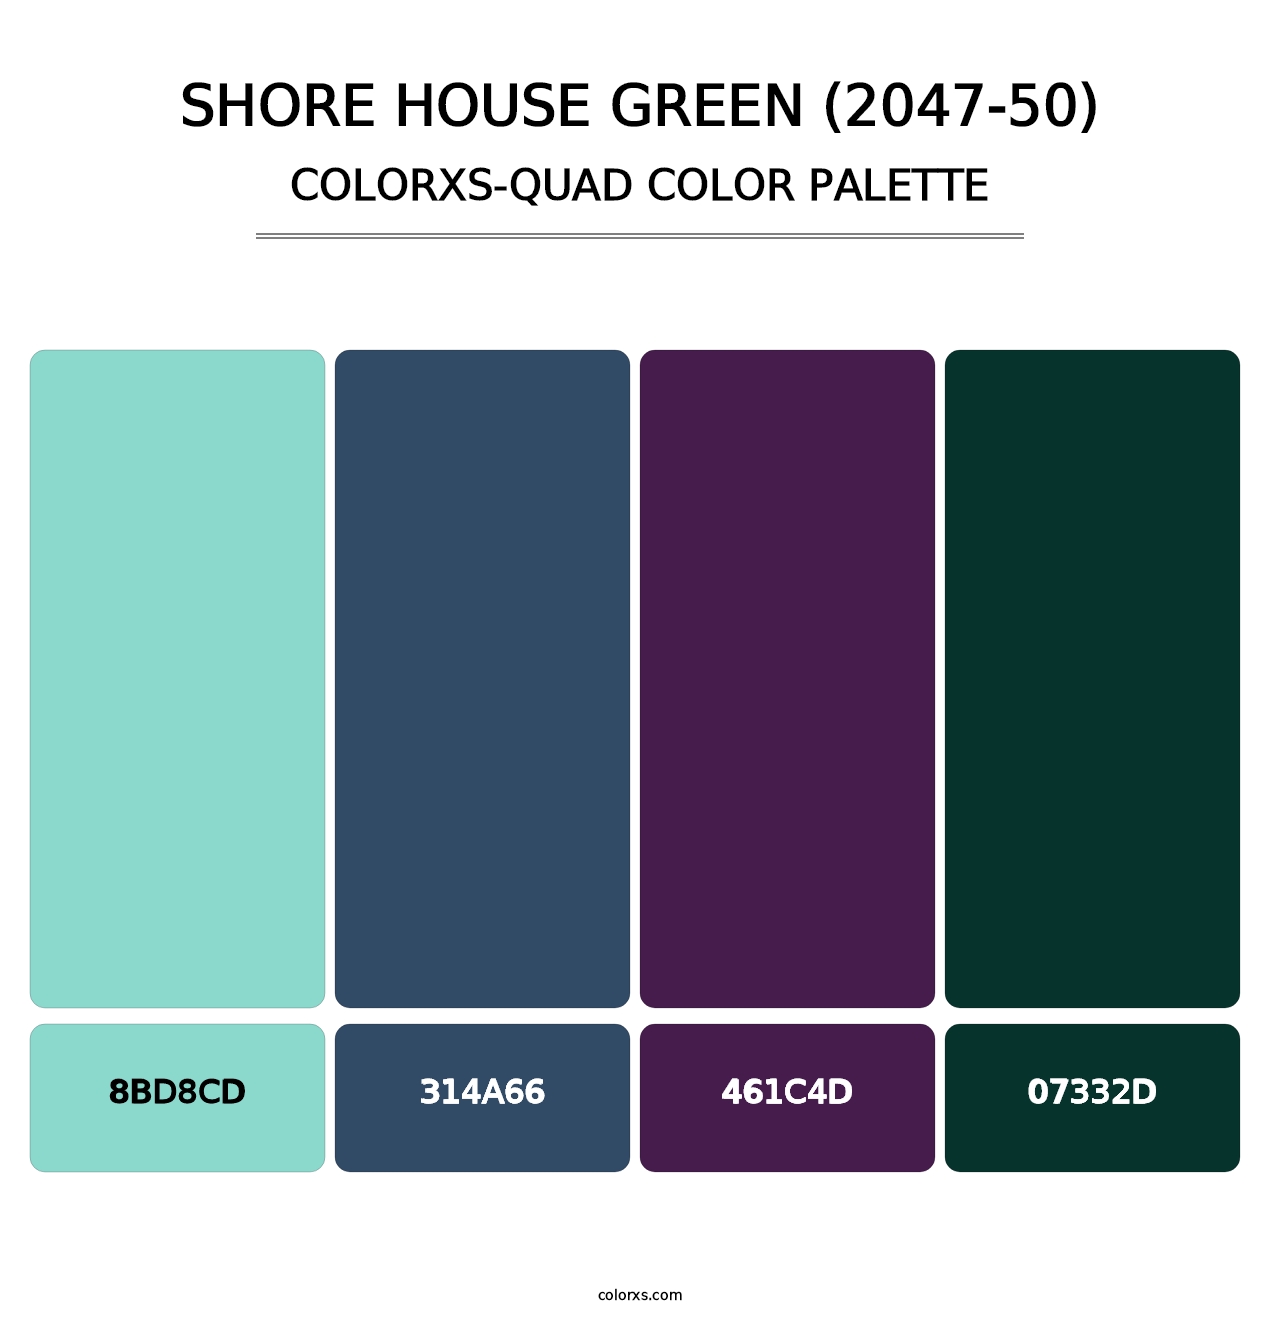 Shore House Green (2047-50) - Colorxs Quad Palette